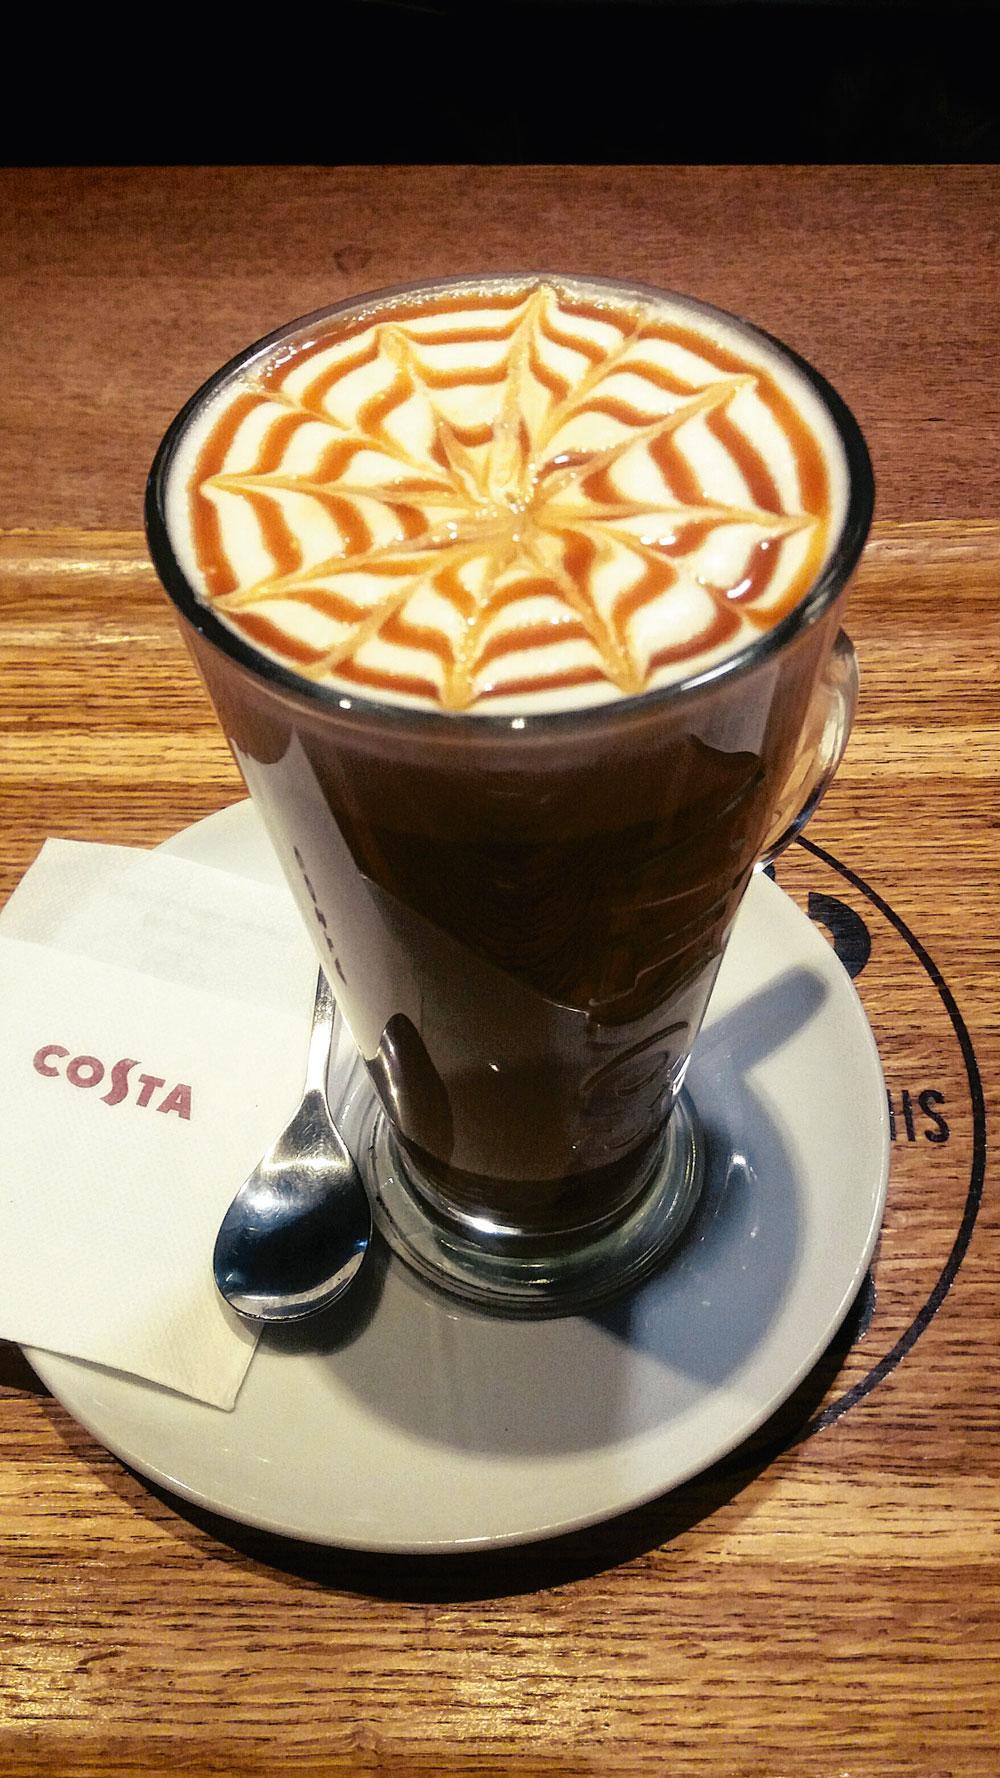 Le Costa Coffee.